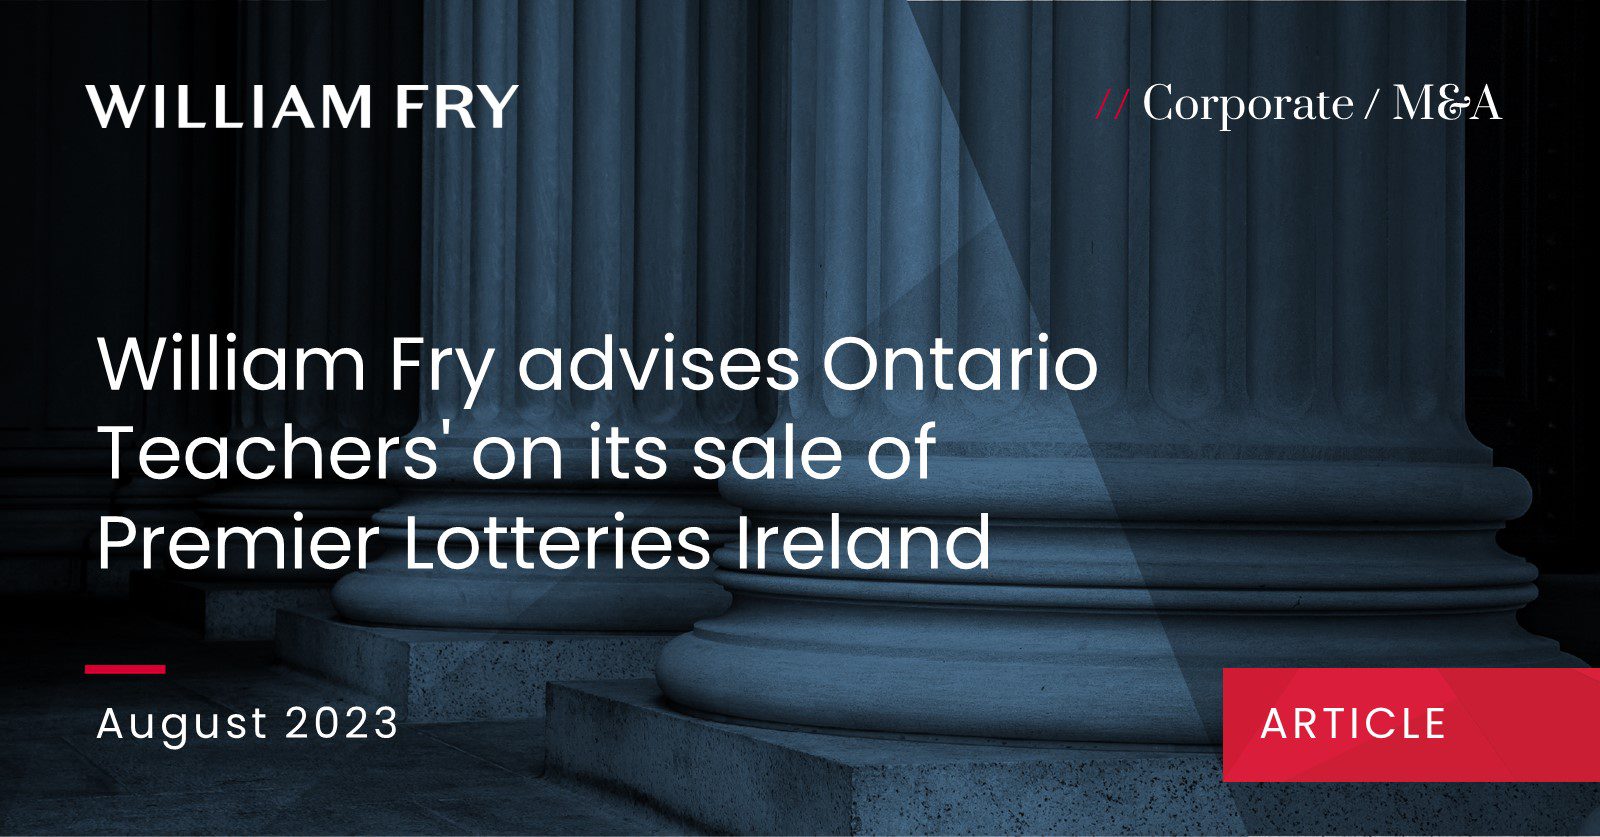 William Fry advises Ontario Teachers' on its sale of Premier Lotteries Ireland